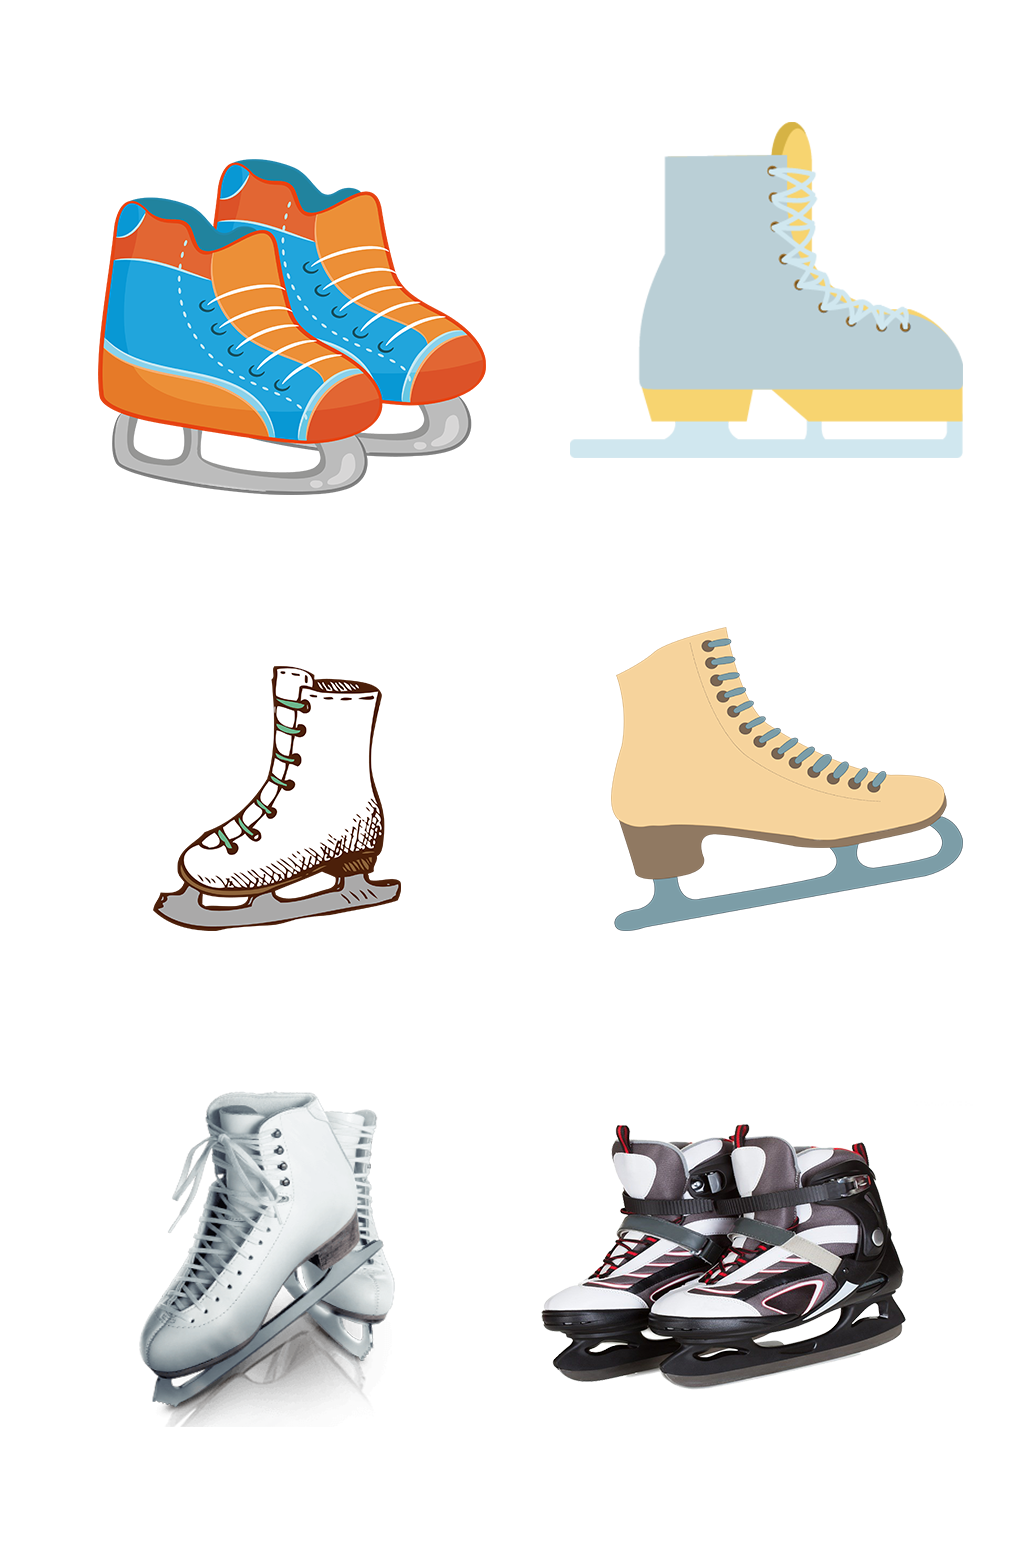 冰刀鞋插画图片